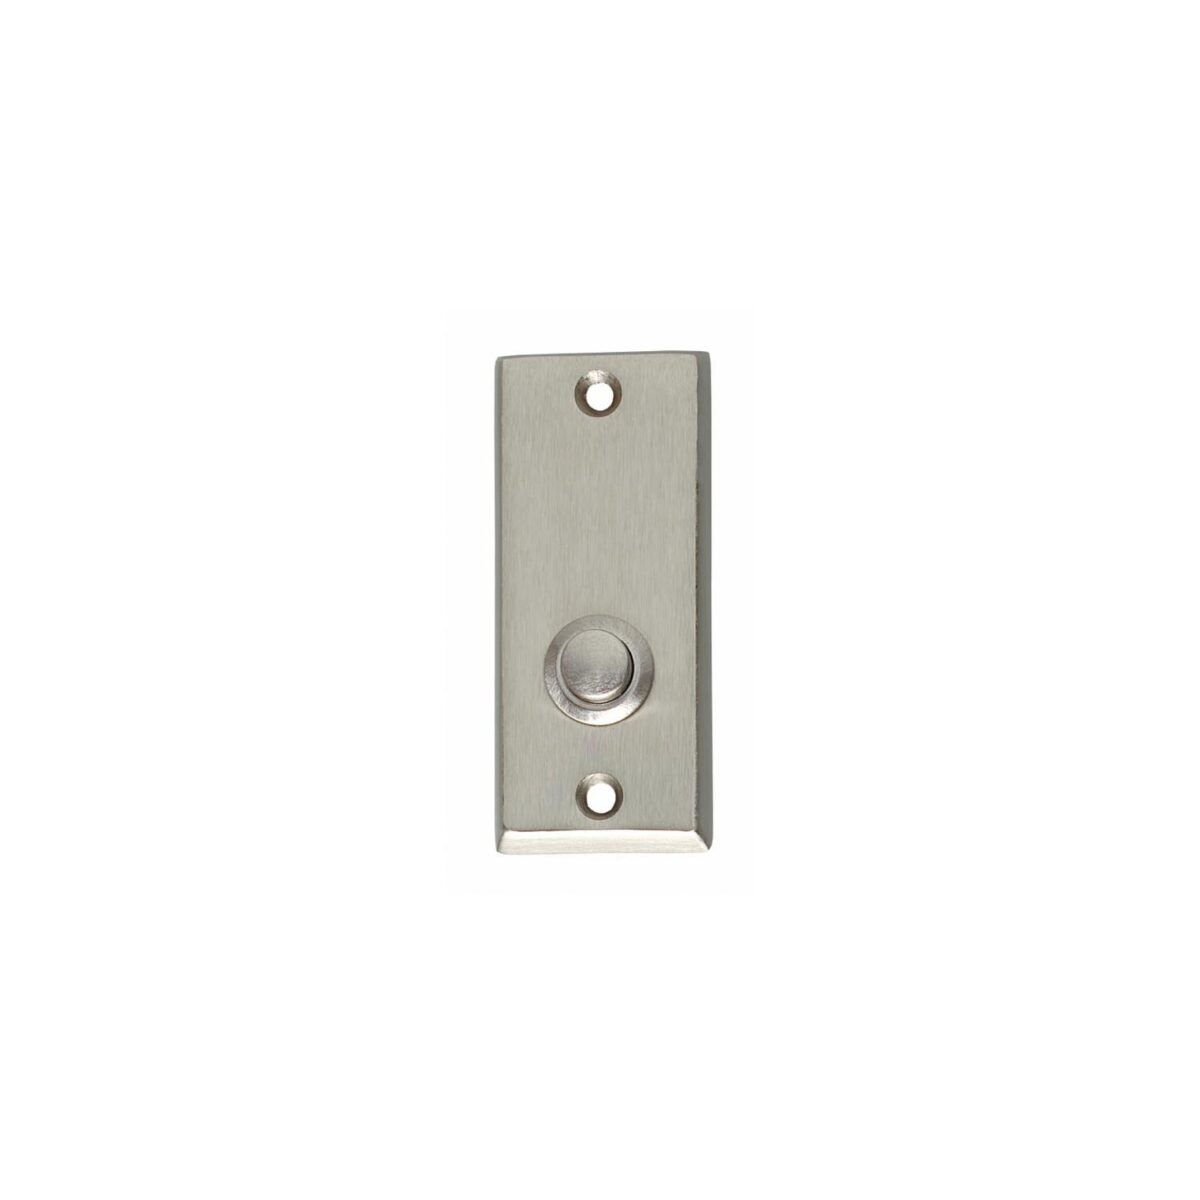 doorbell rectangular nickel, doorbell, ring doorbell, doorbells, pull bell, ding dong doorbell, doorbell set